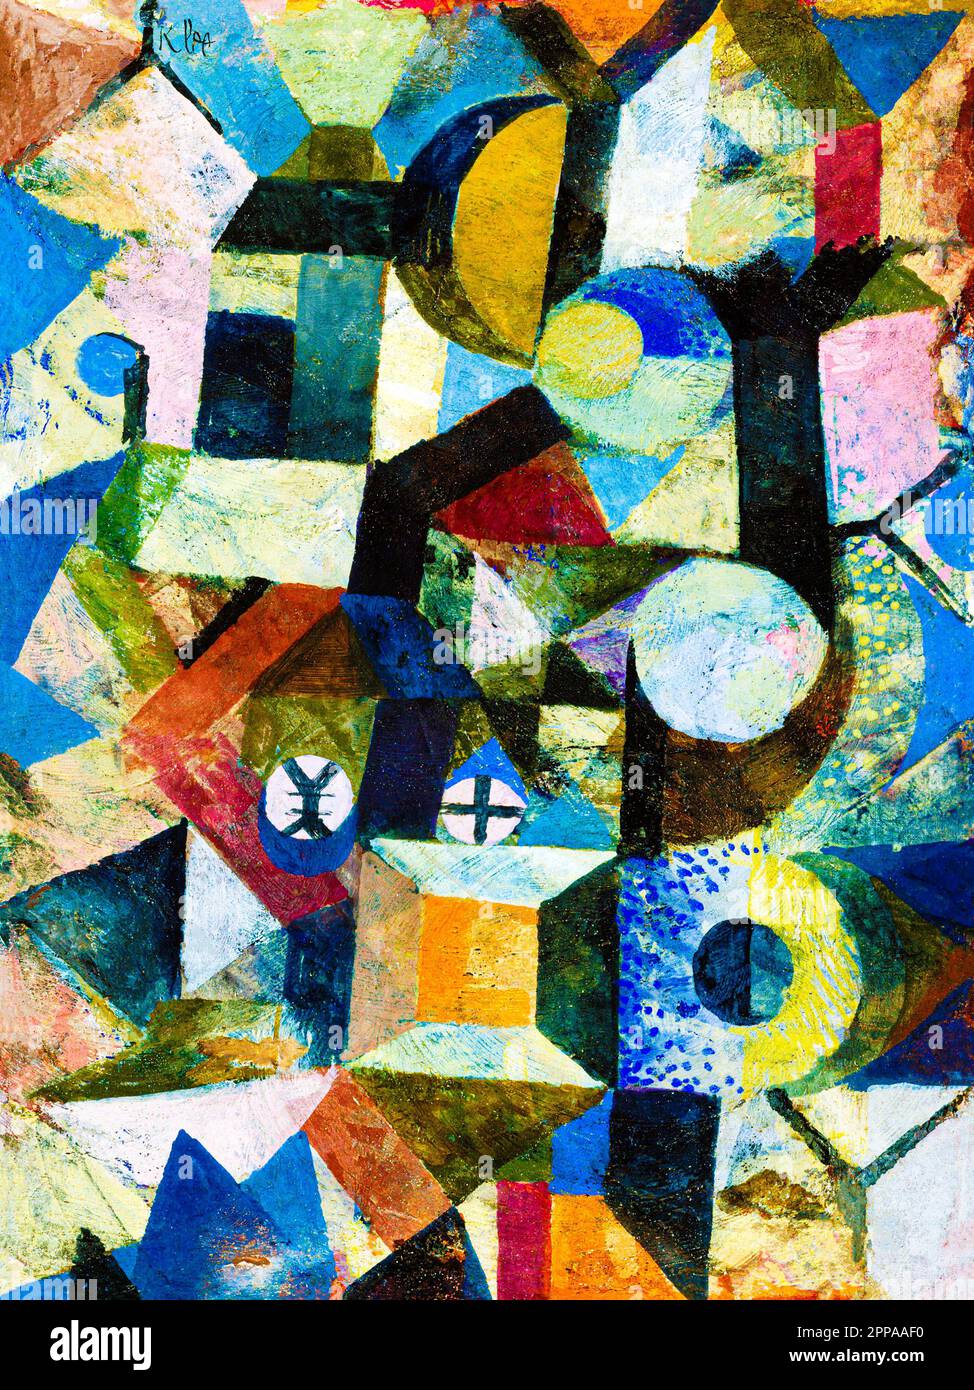 Composition avec la demi-lune jaune et le y par Paul Klee. Original du MUSÉE MET. Banque D'Images